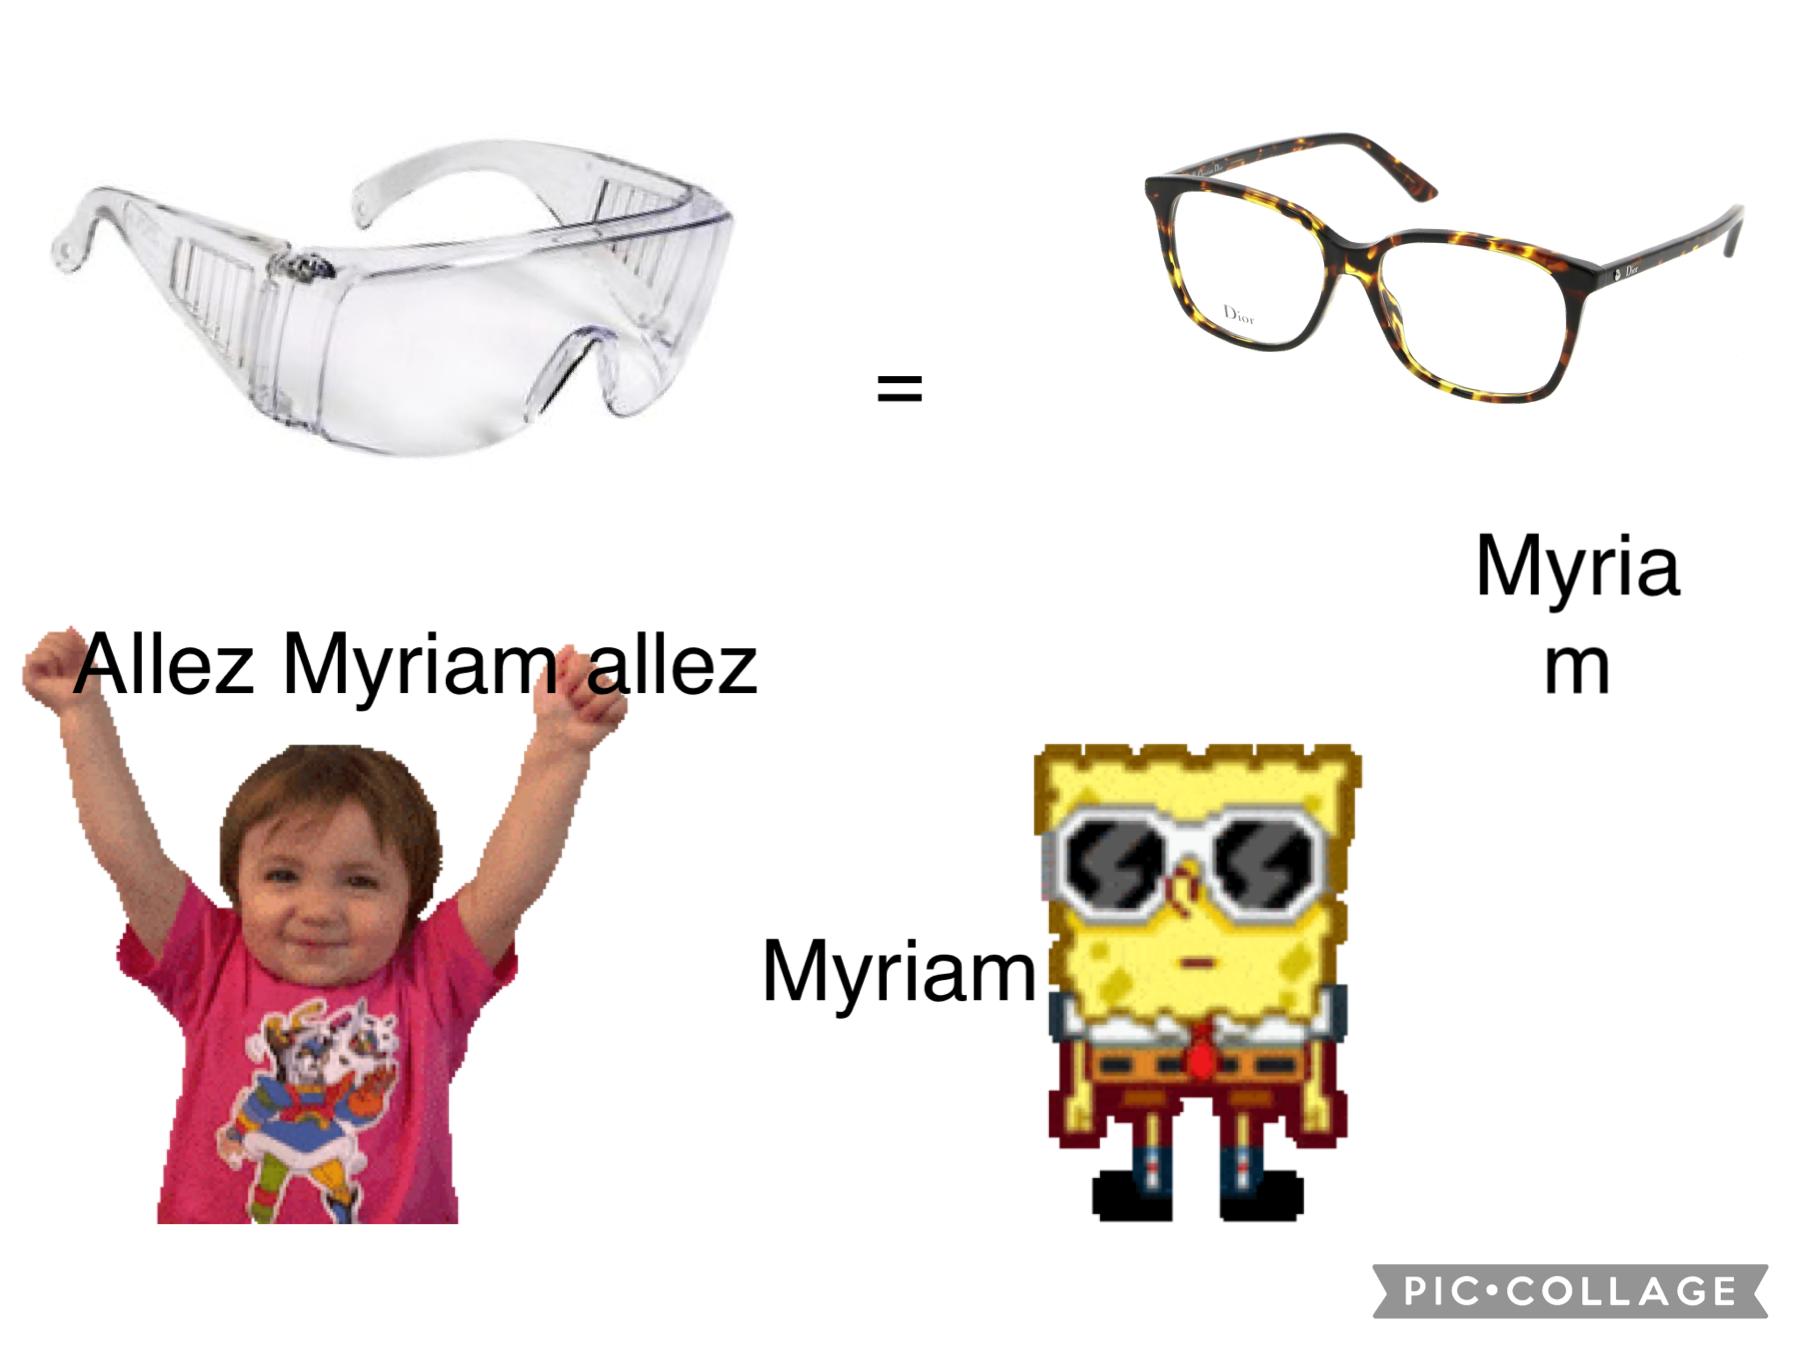 Myriam est ses lunettes 🥽 

(Ses de l’humour ok )